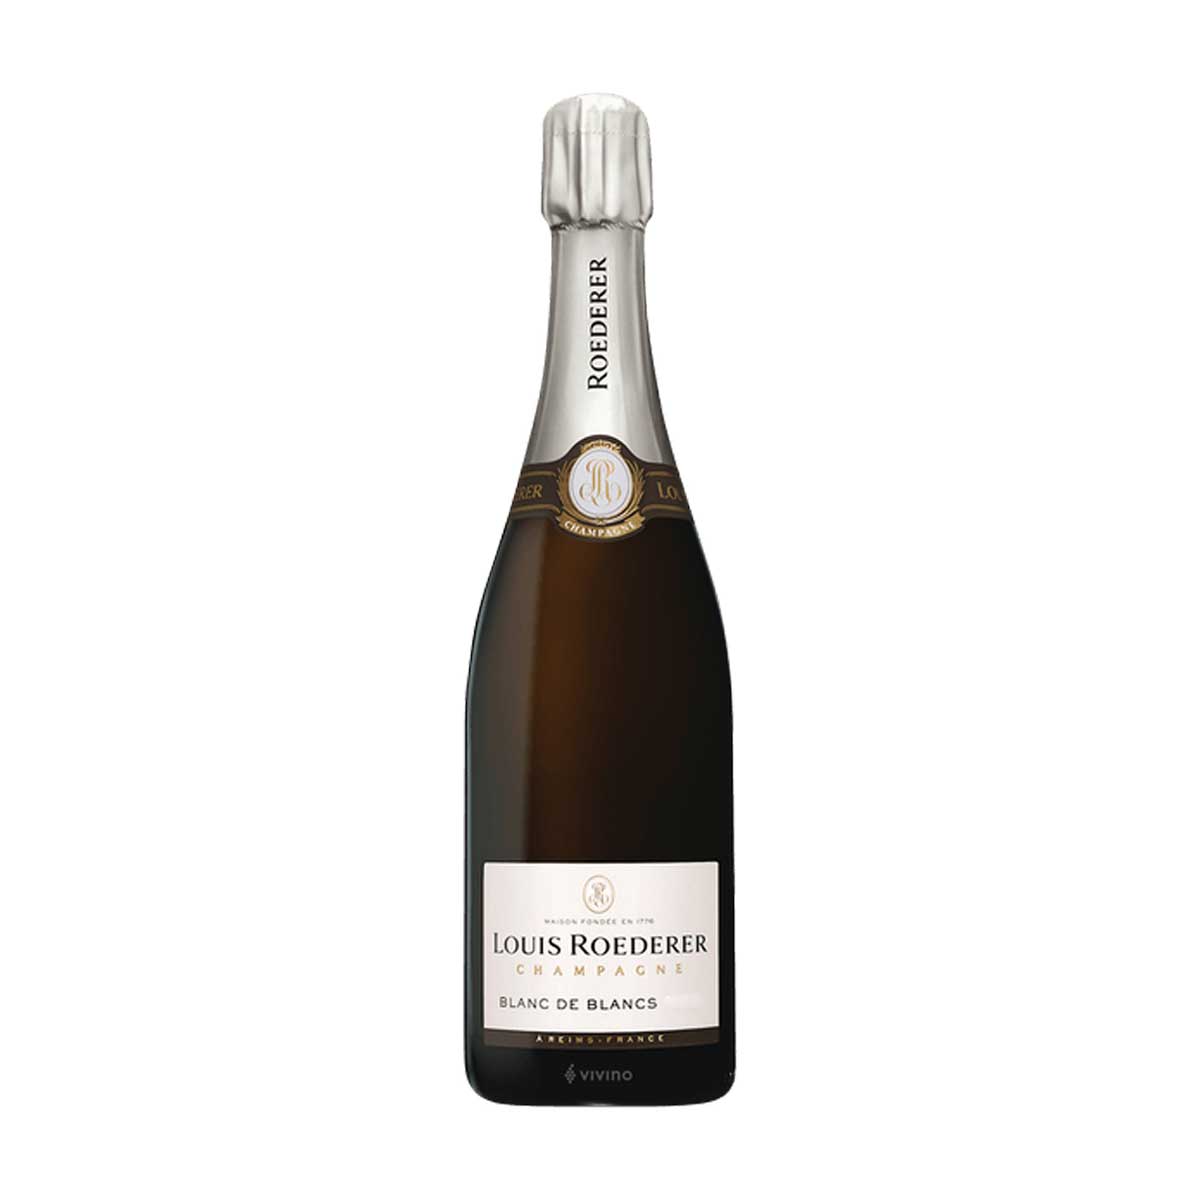 TAG Liquor Stores BC - Louis Roederer Blanc de Blancs Champagne 750ml